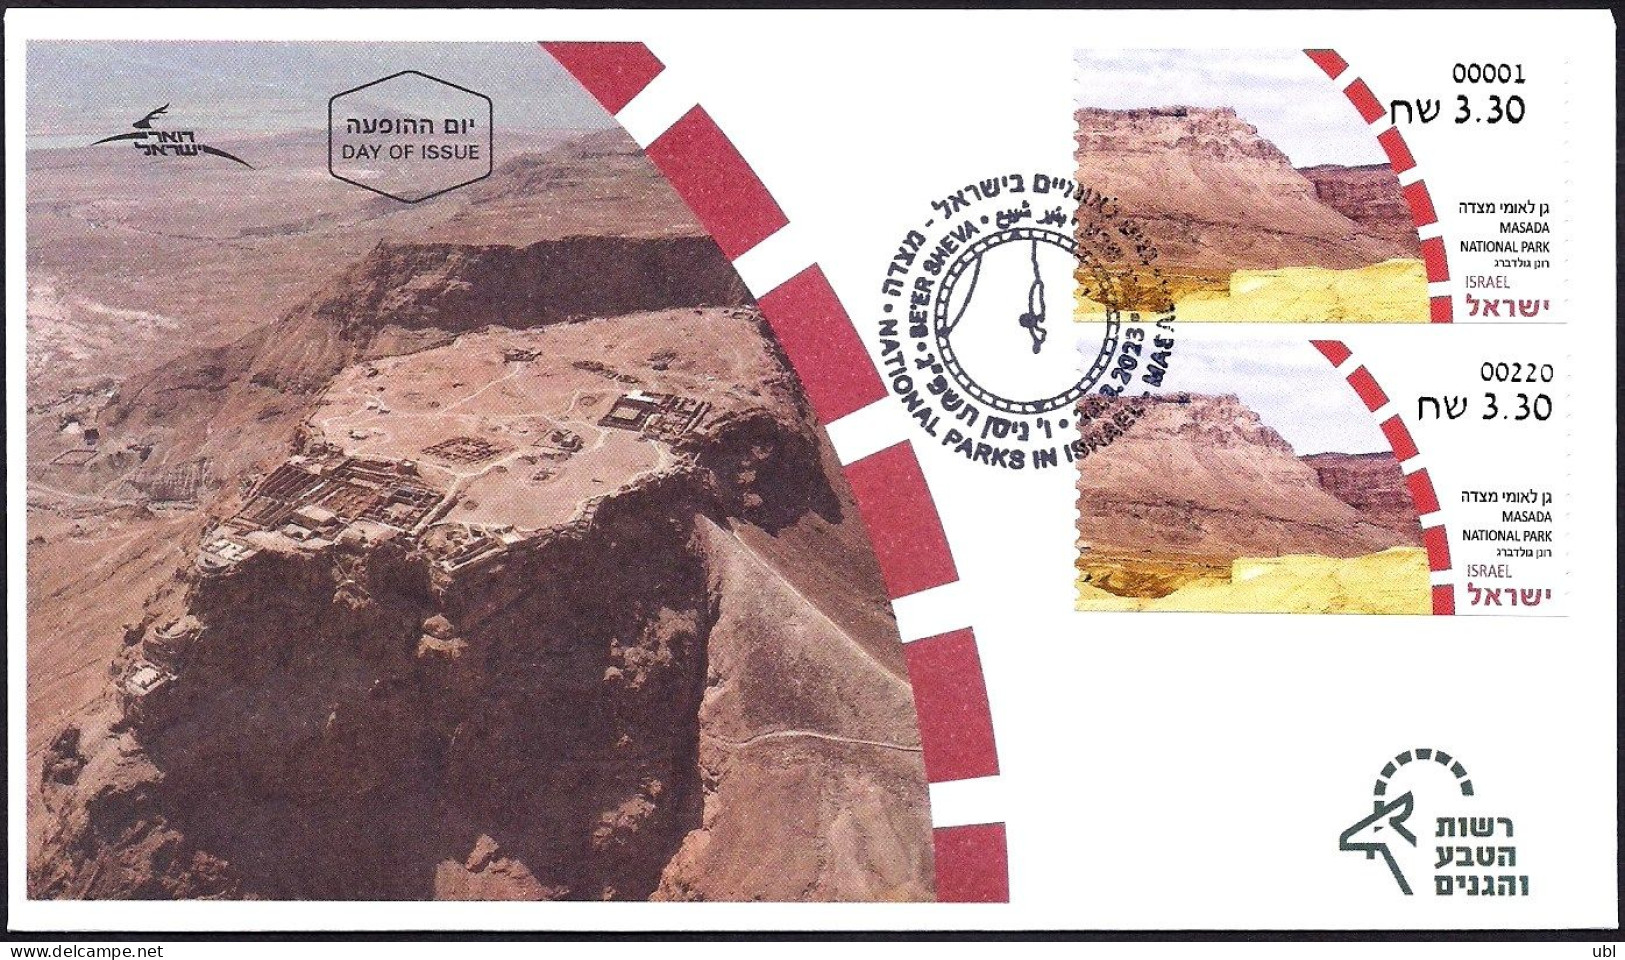 ISRAEL 2023 - National Parks In Israel - Masada National Park - Phil. Service # 001 & Be'er Sheva # 300 ATM Labels - FDC - Archéologie